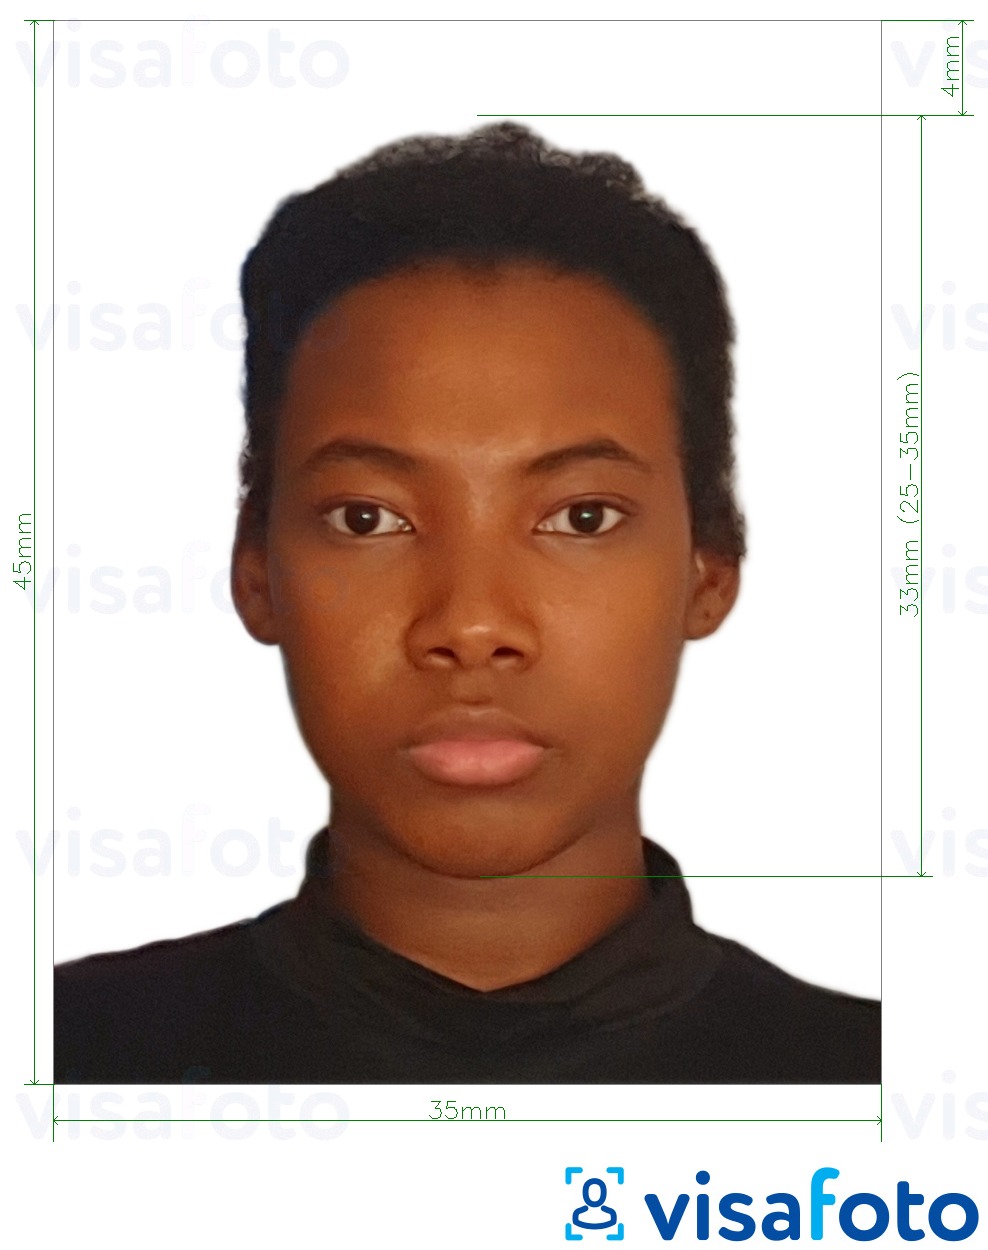  Jamaica pass 35x45 mm (3,5x4,5 cm) fotonäidis koos täpse infoga mõõtude kohta.